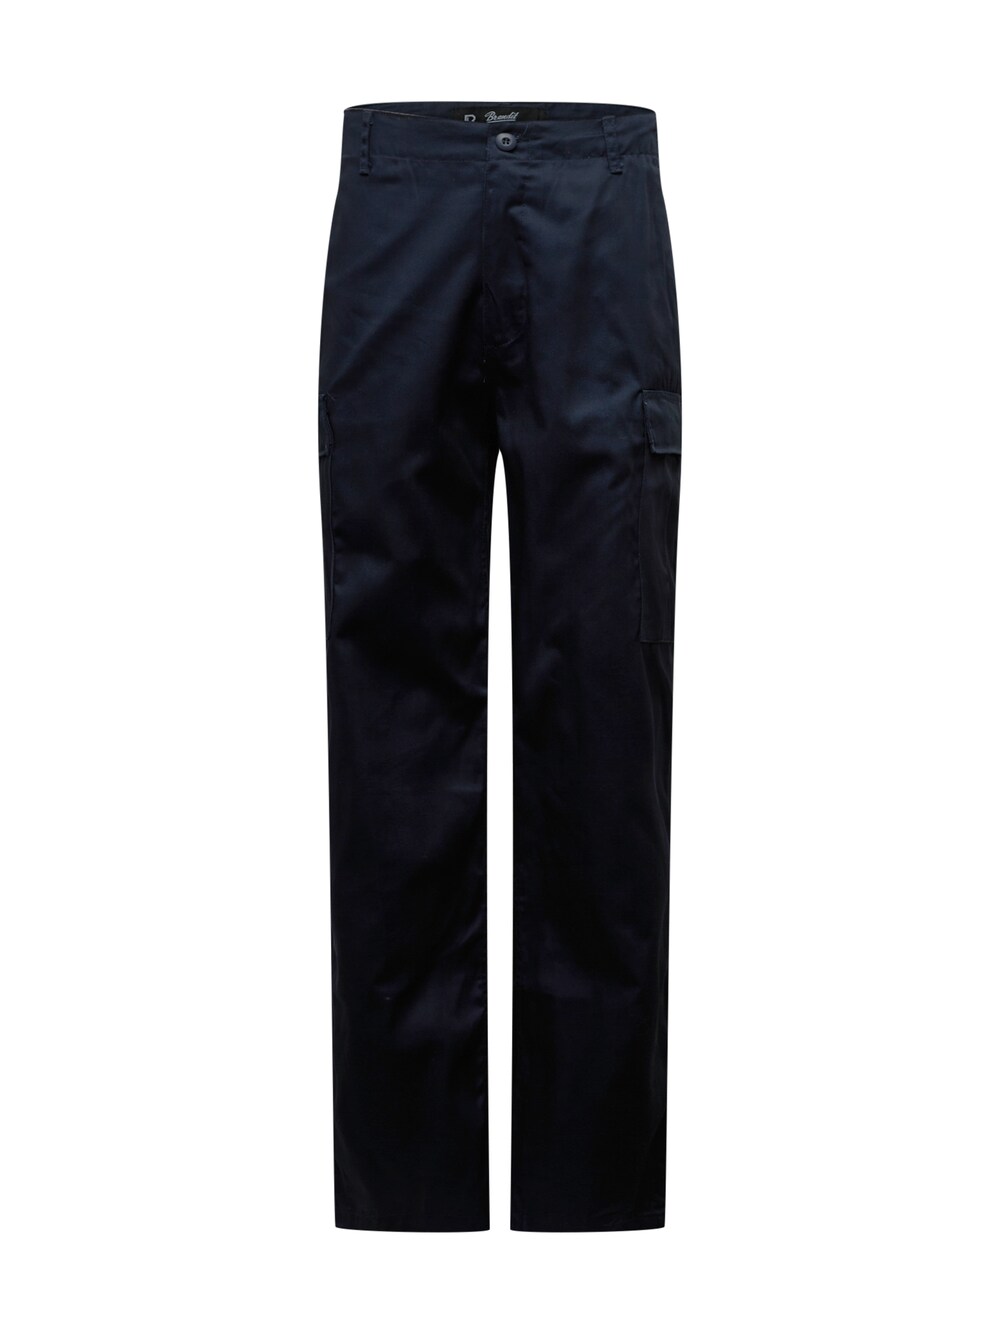 Обычные брюки-карго Brandit Ranger, темно-синий обычные брюки карго s oliver темно синий